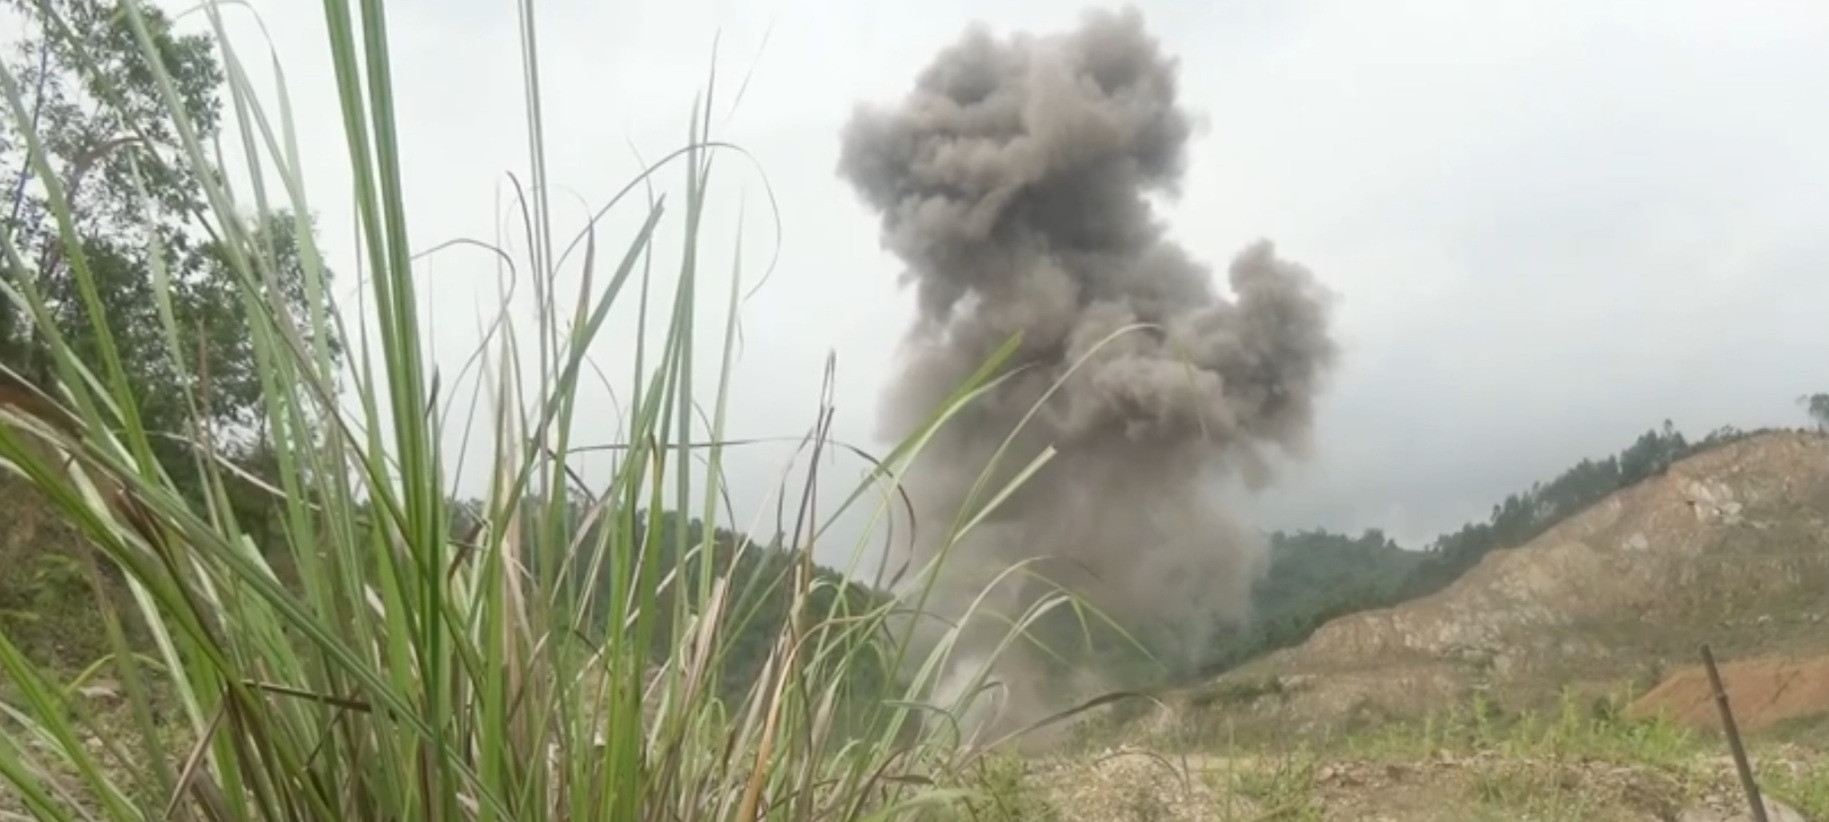 Lực lượng chức năng tỉnh Thanh Hóa phá nổ quả bom nặng 340kg an toàn.